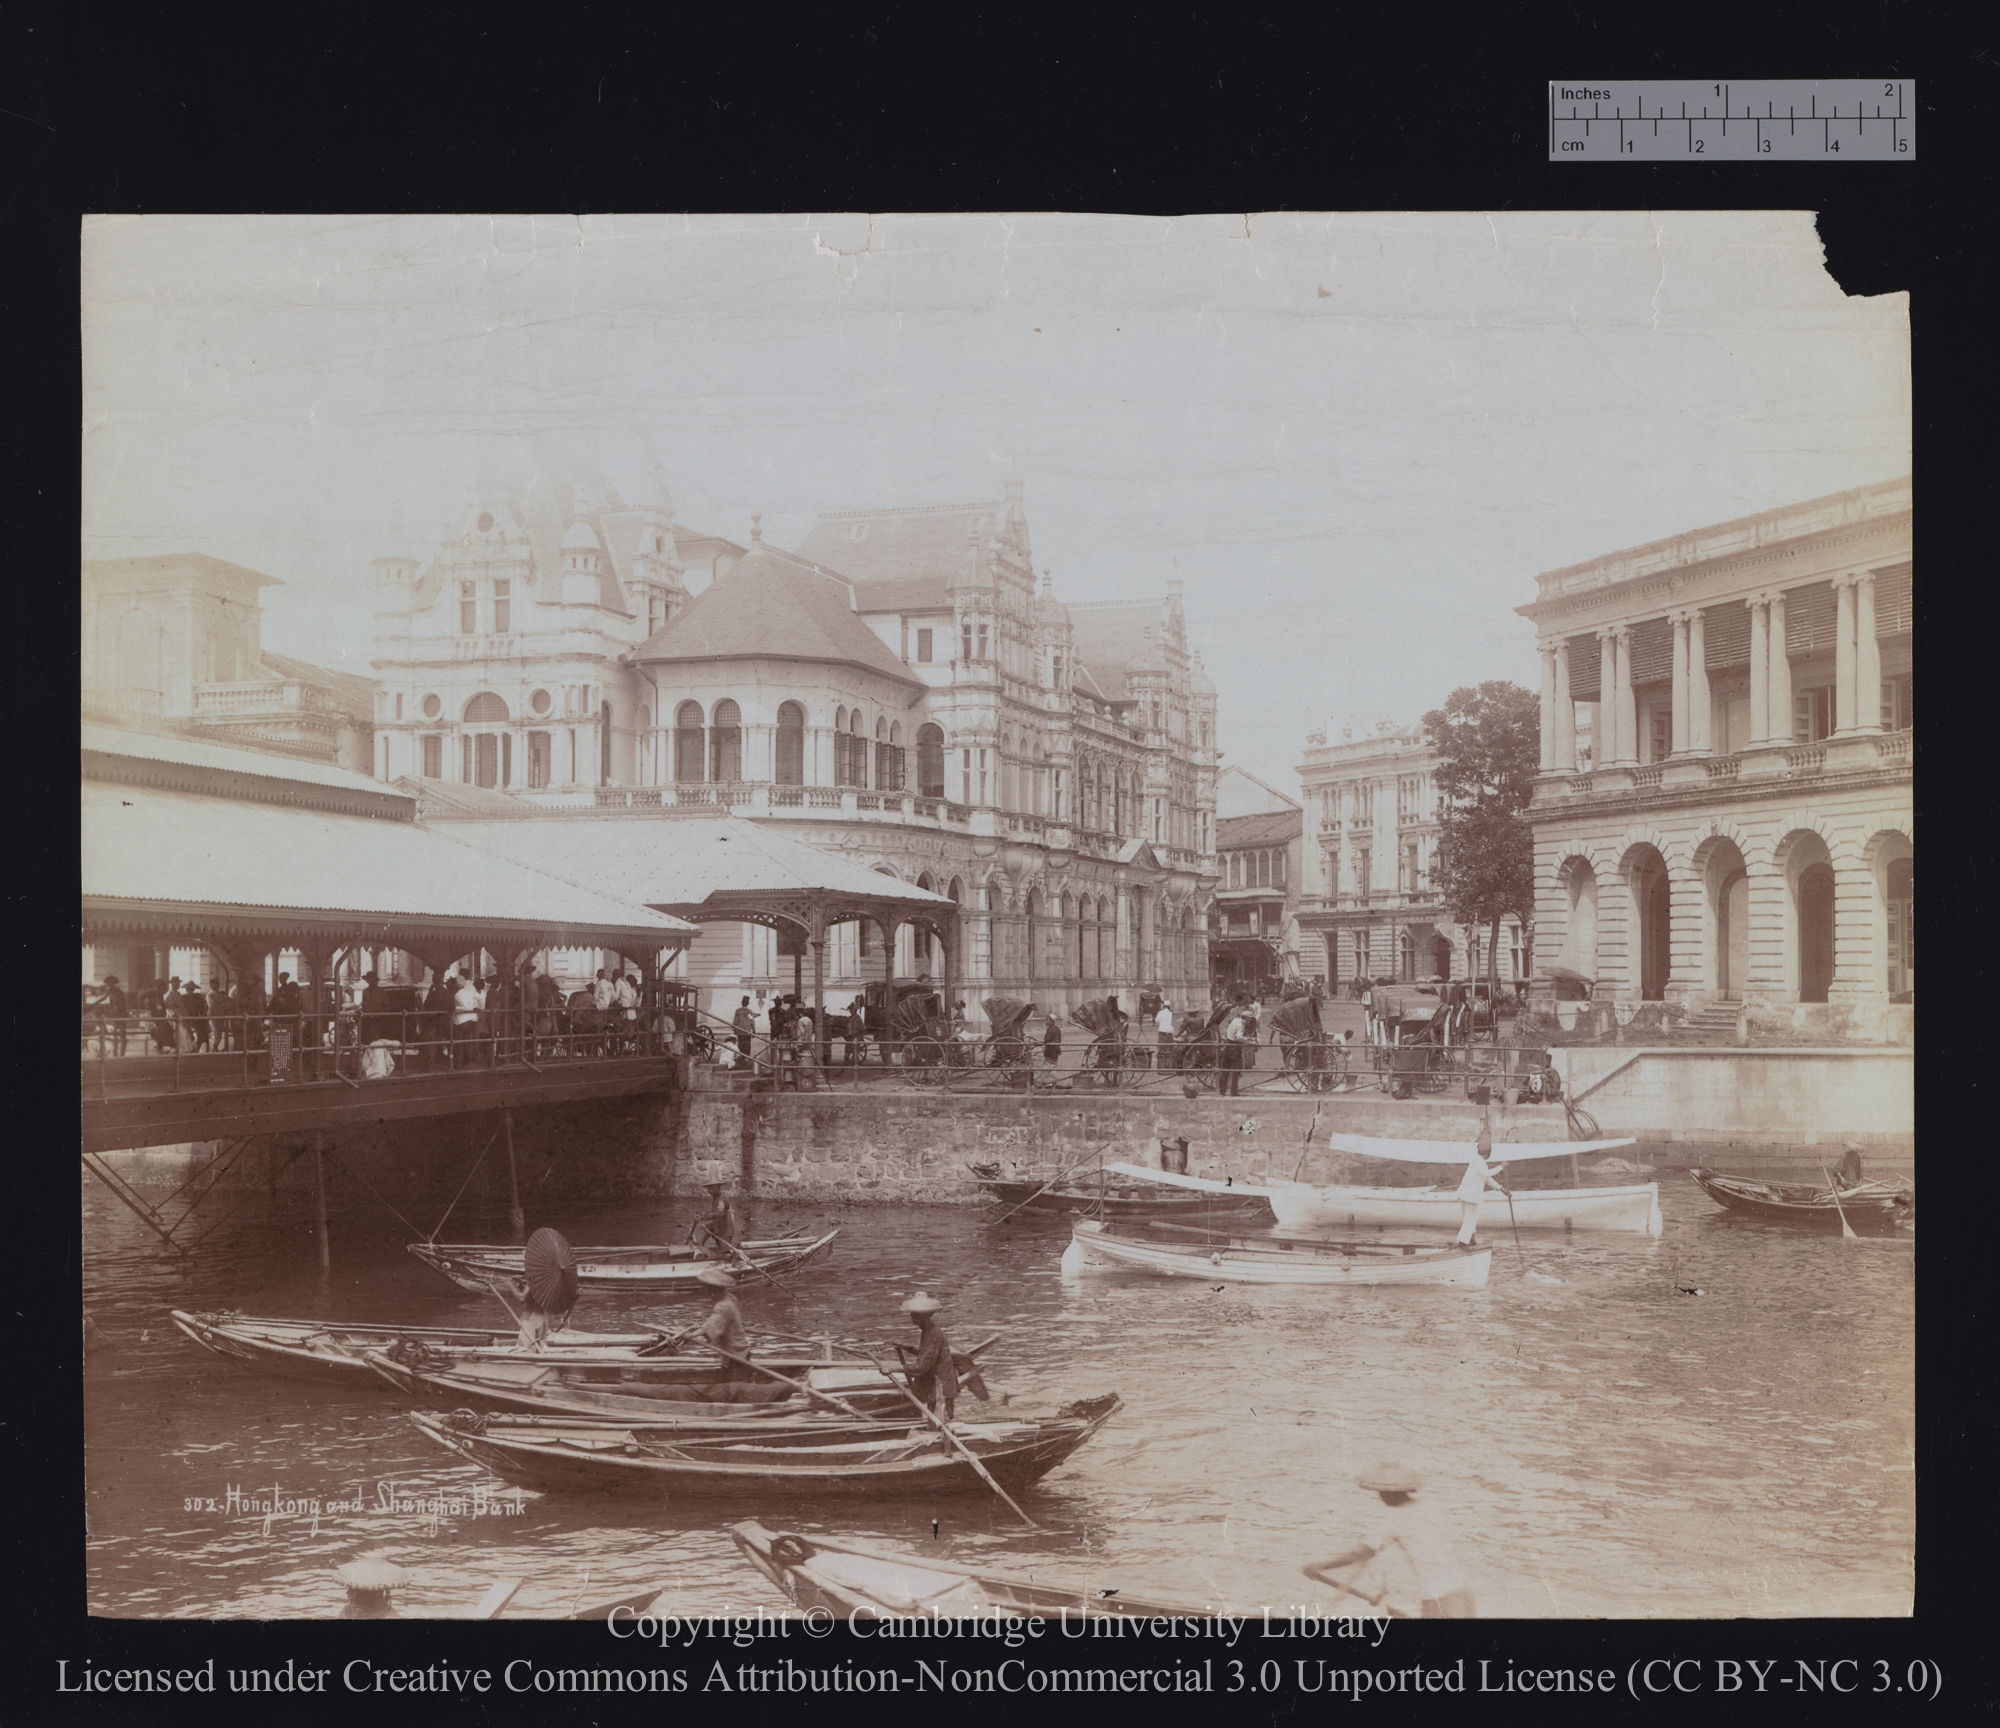 Hong Kong and Shanghai Bank, Singapore, 1890 - 1899